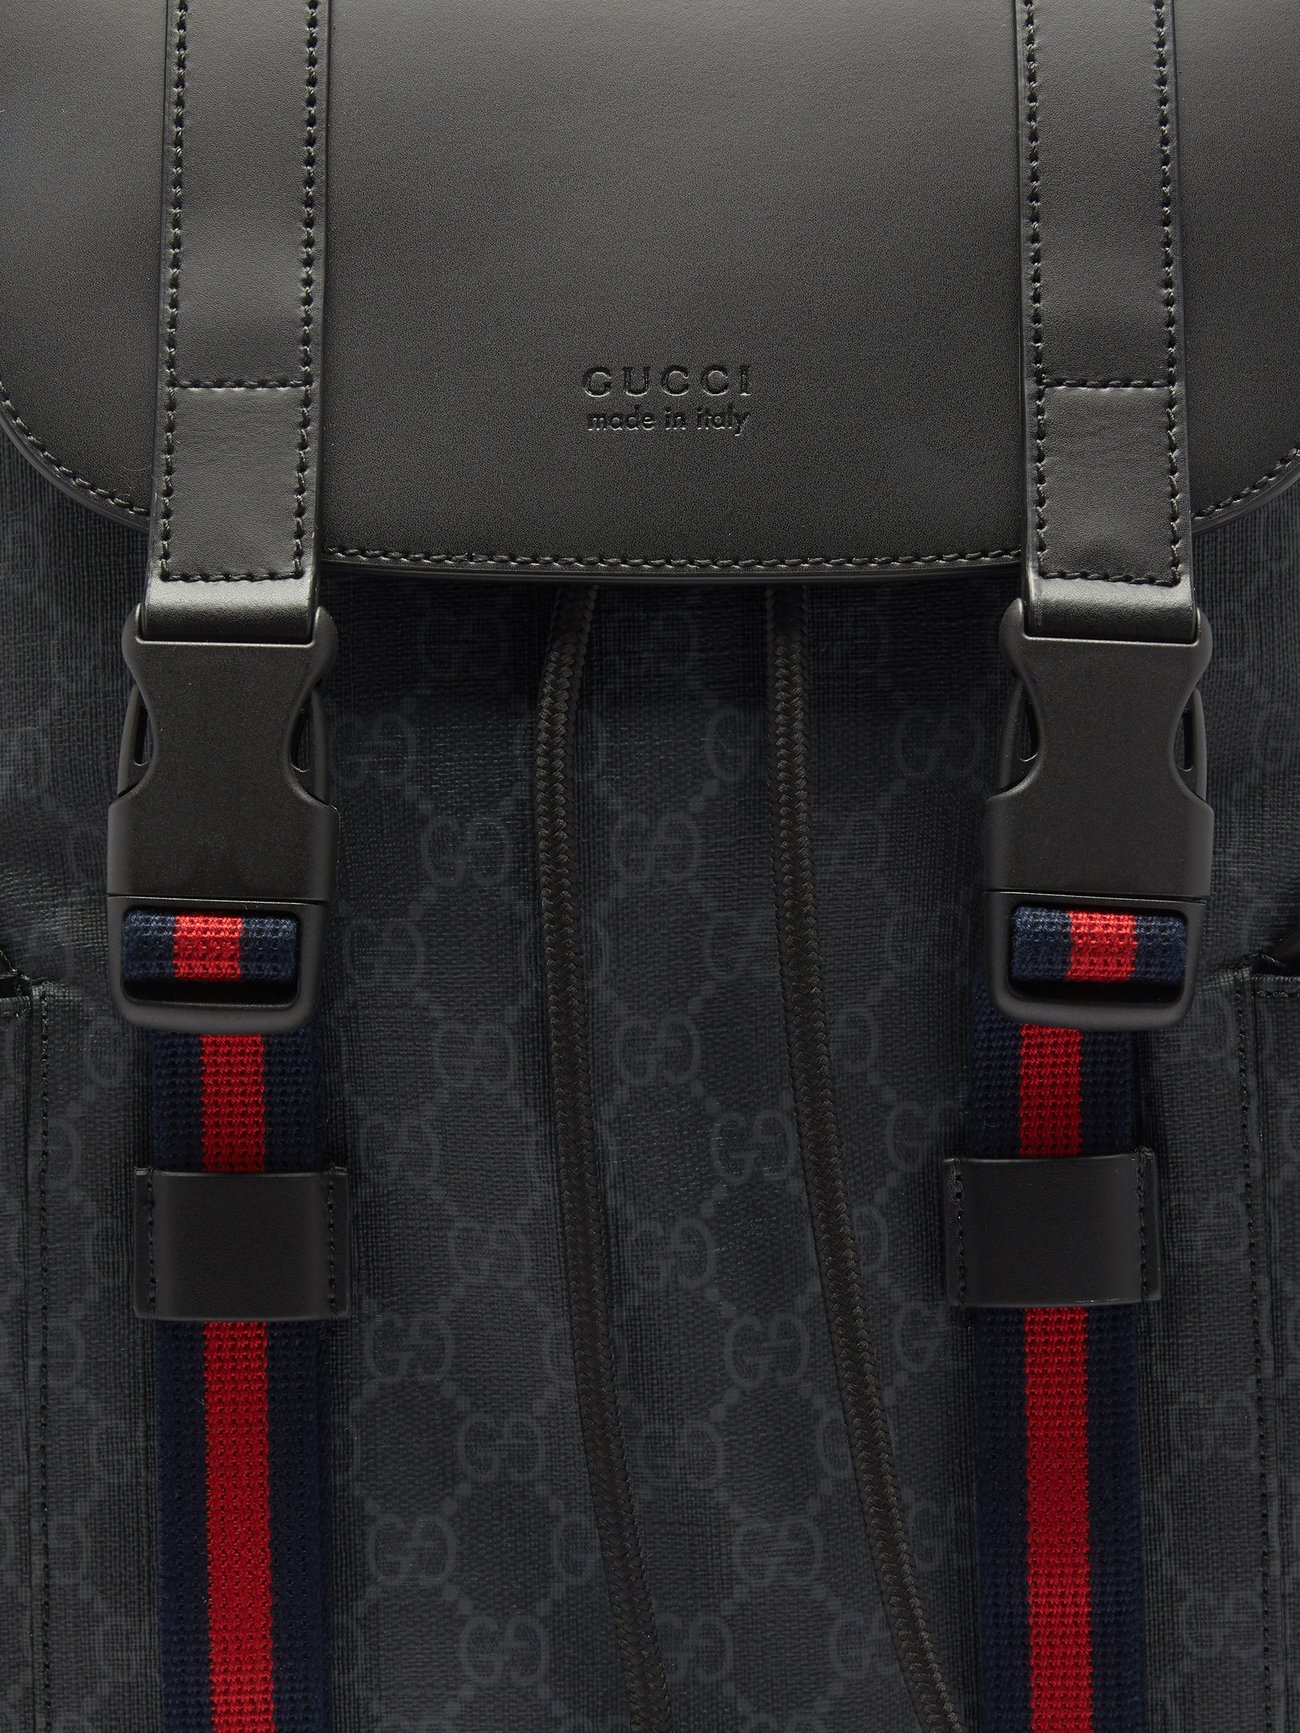 Gucci Black GG Single Strap Backpack for Men